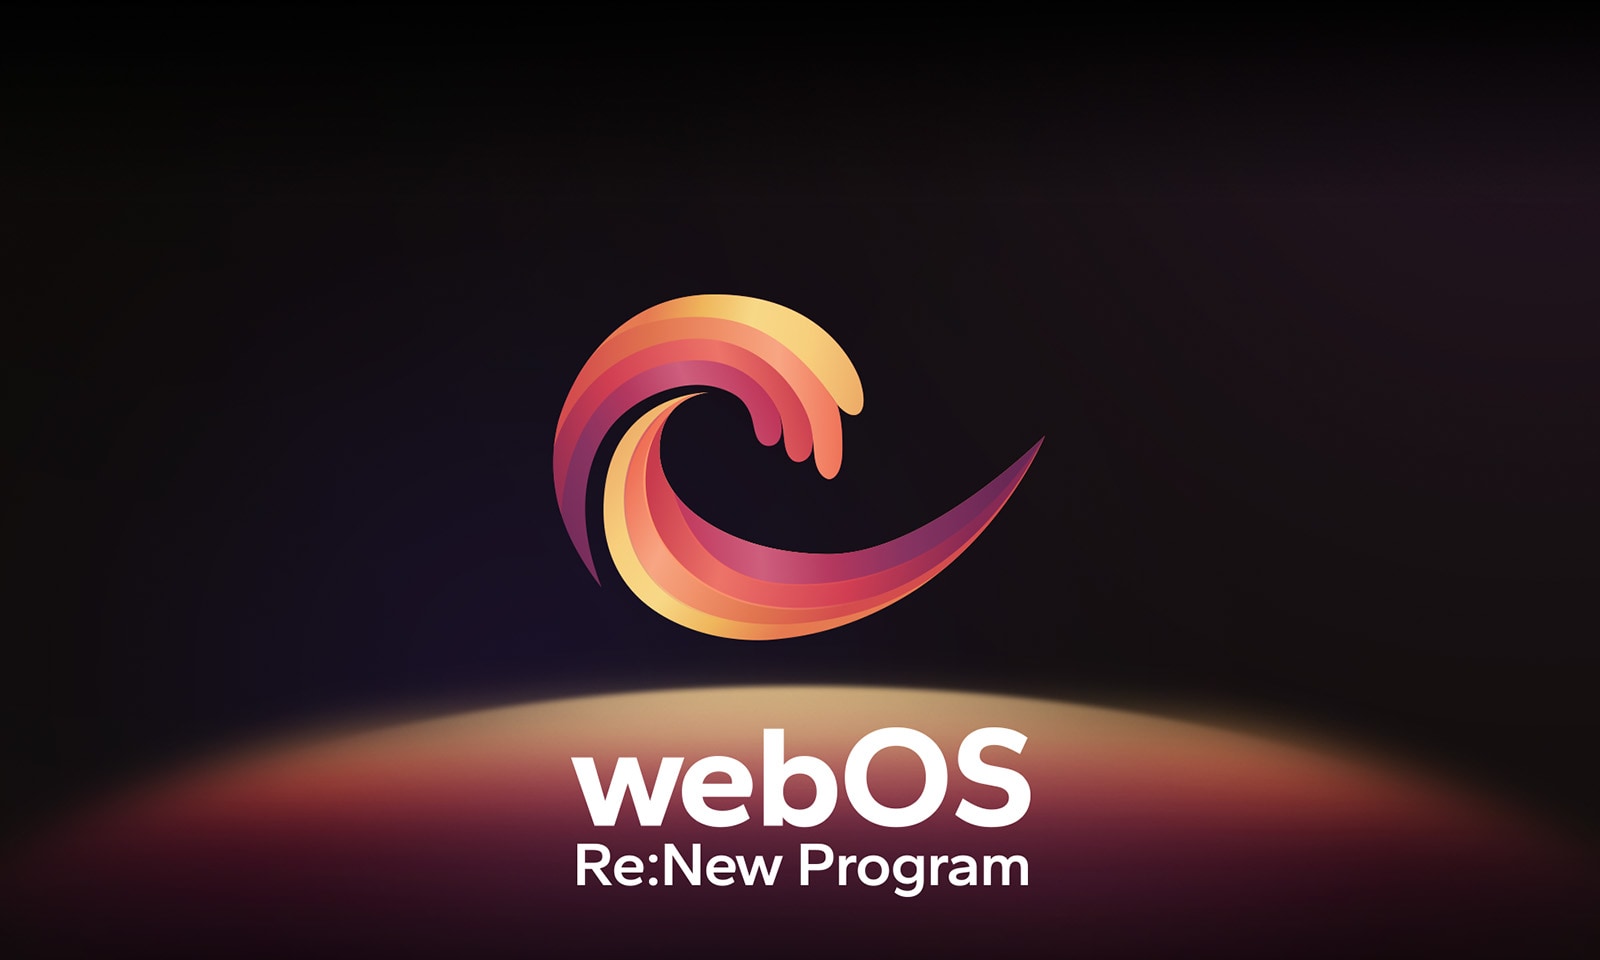 โลโก้โปรแกรม webOS Re:New มีพื้นหลังสีดำโดยมีทรงกลมสีเหลือง สีส้ม และสีม่วงที่ด้านล่าง